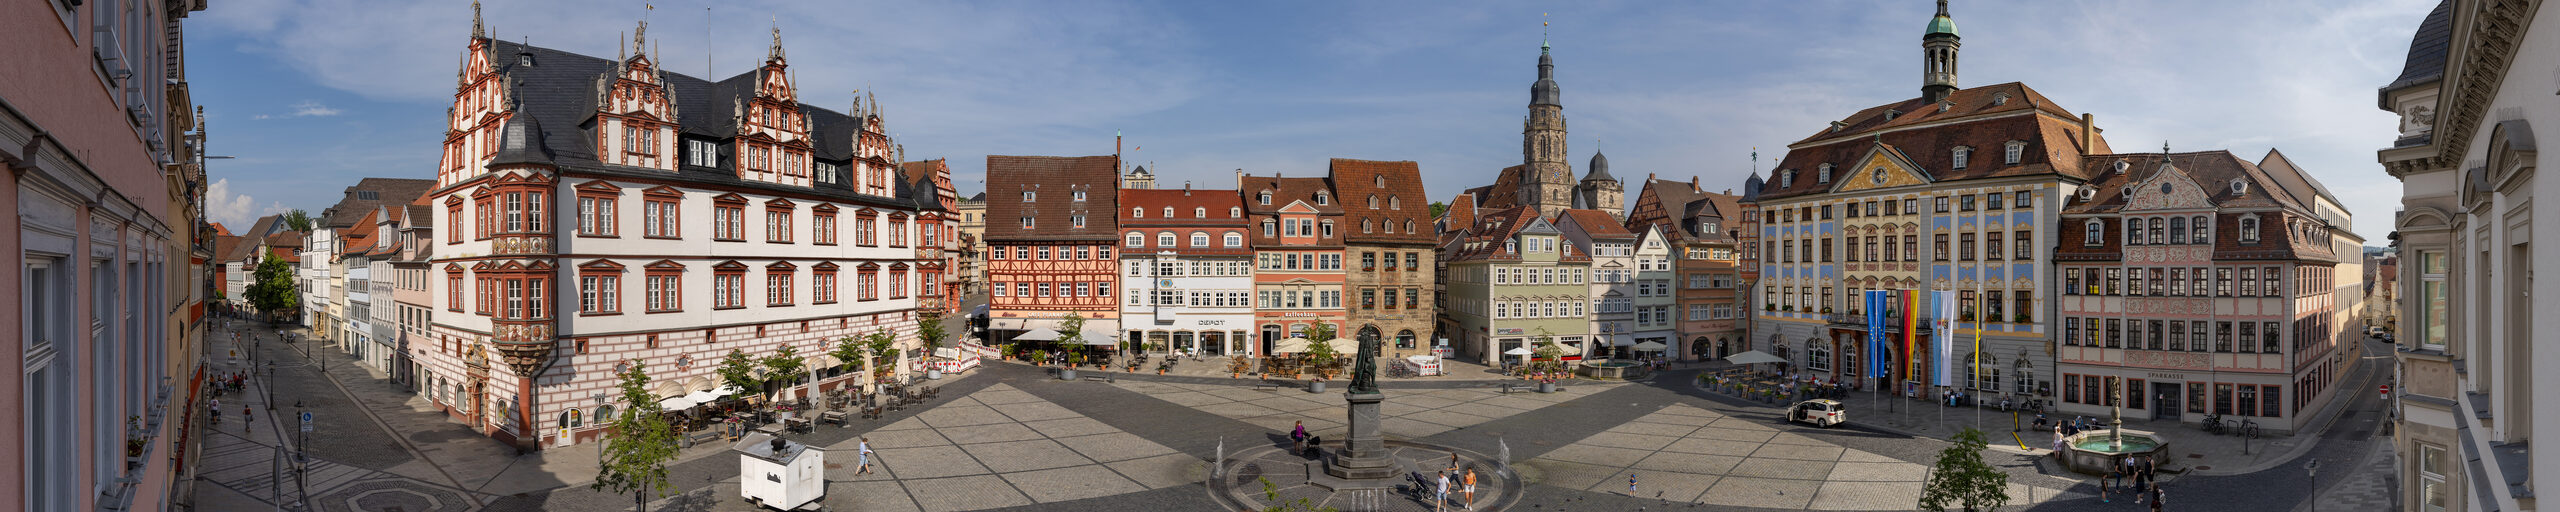 Panorama des Coburger Marktplatzes